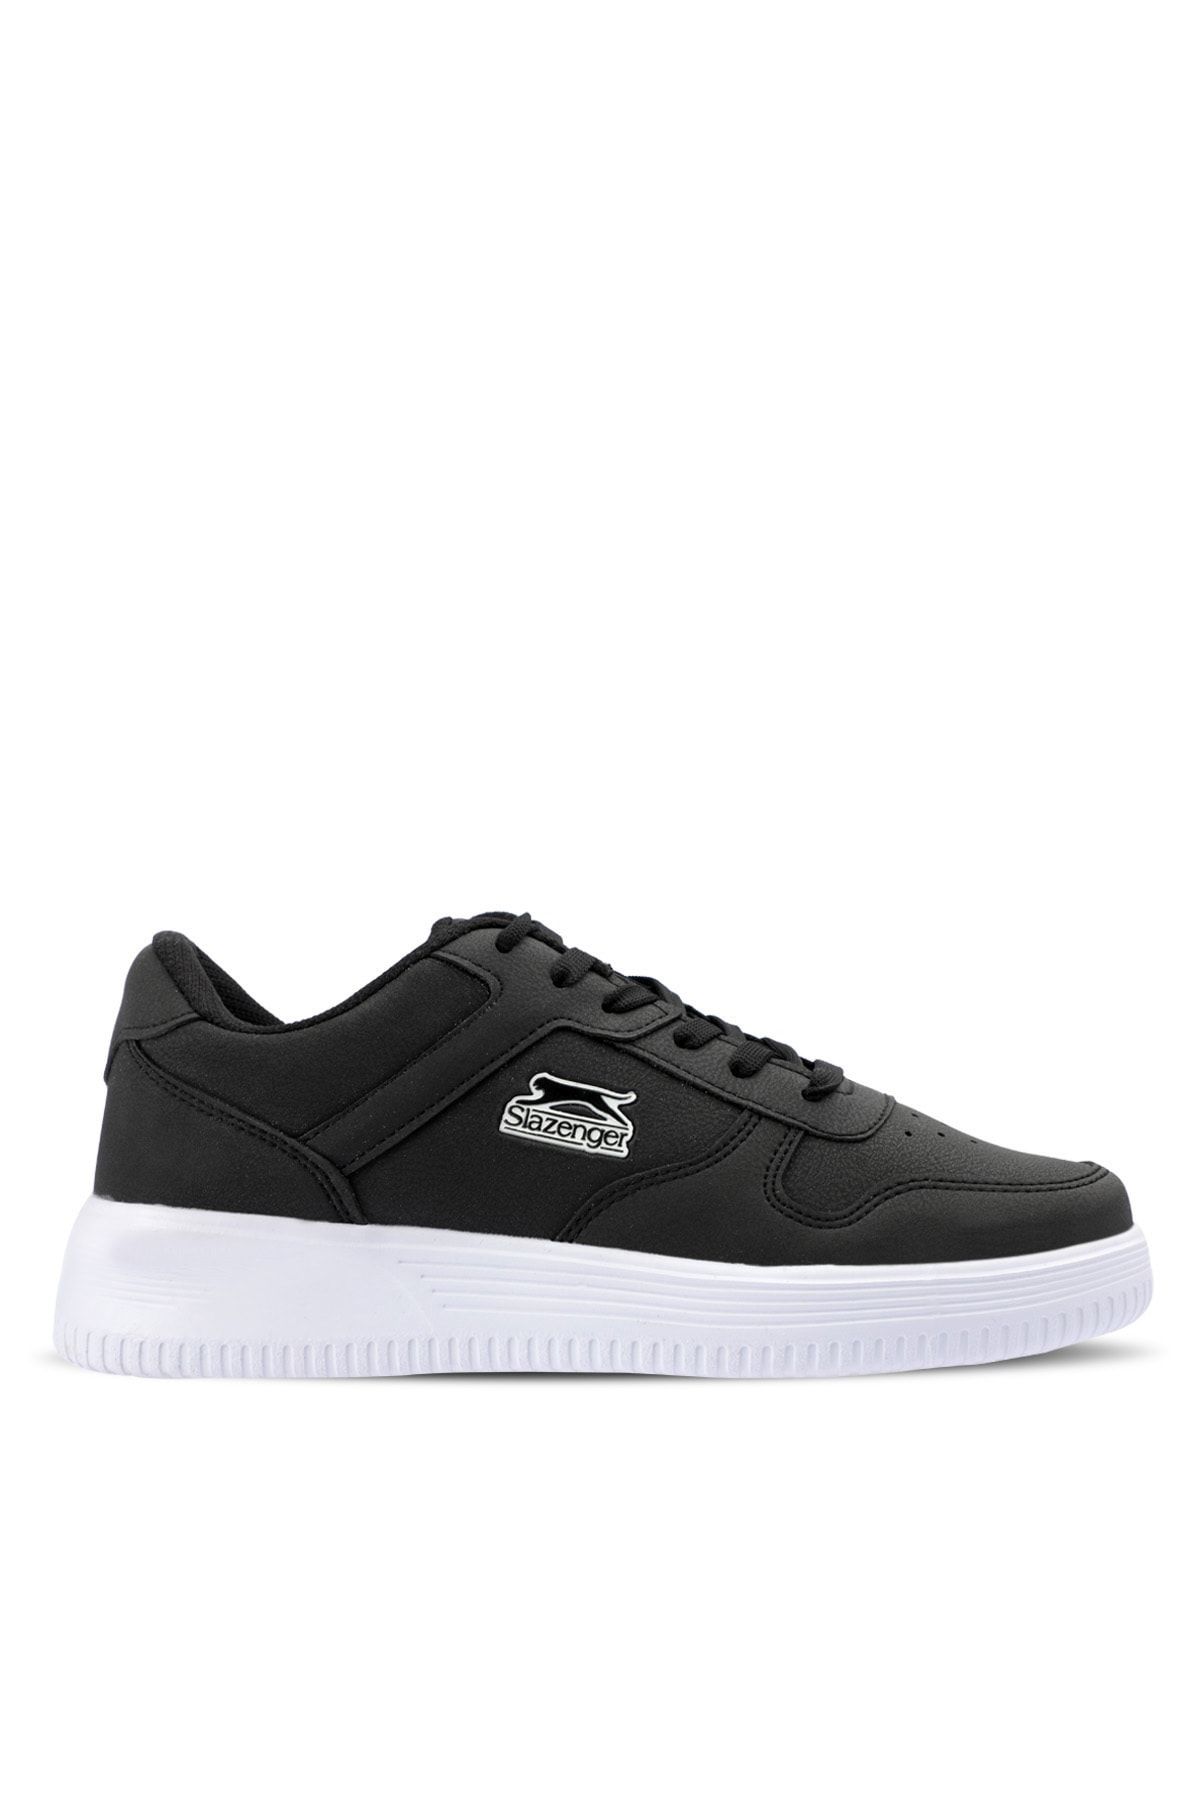 Slazenger Elıora I Sneaker Kadın Ayakkabı Siyah / Beyaz